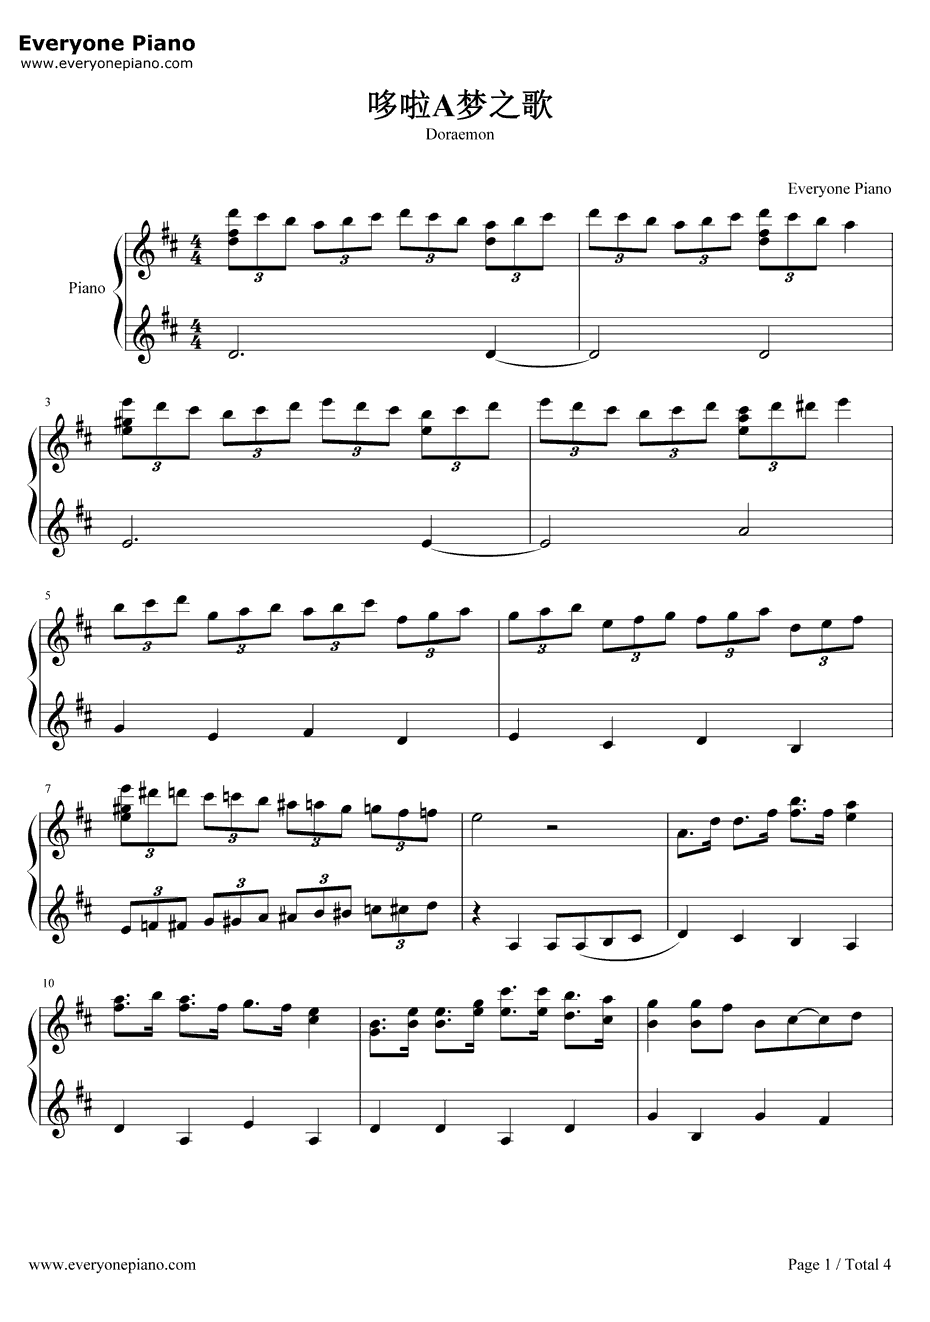 哆啦A梦主题曲钢琴谱-大杉久美子-哆啦A梦之歌1